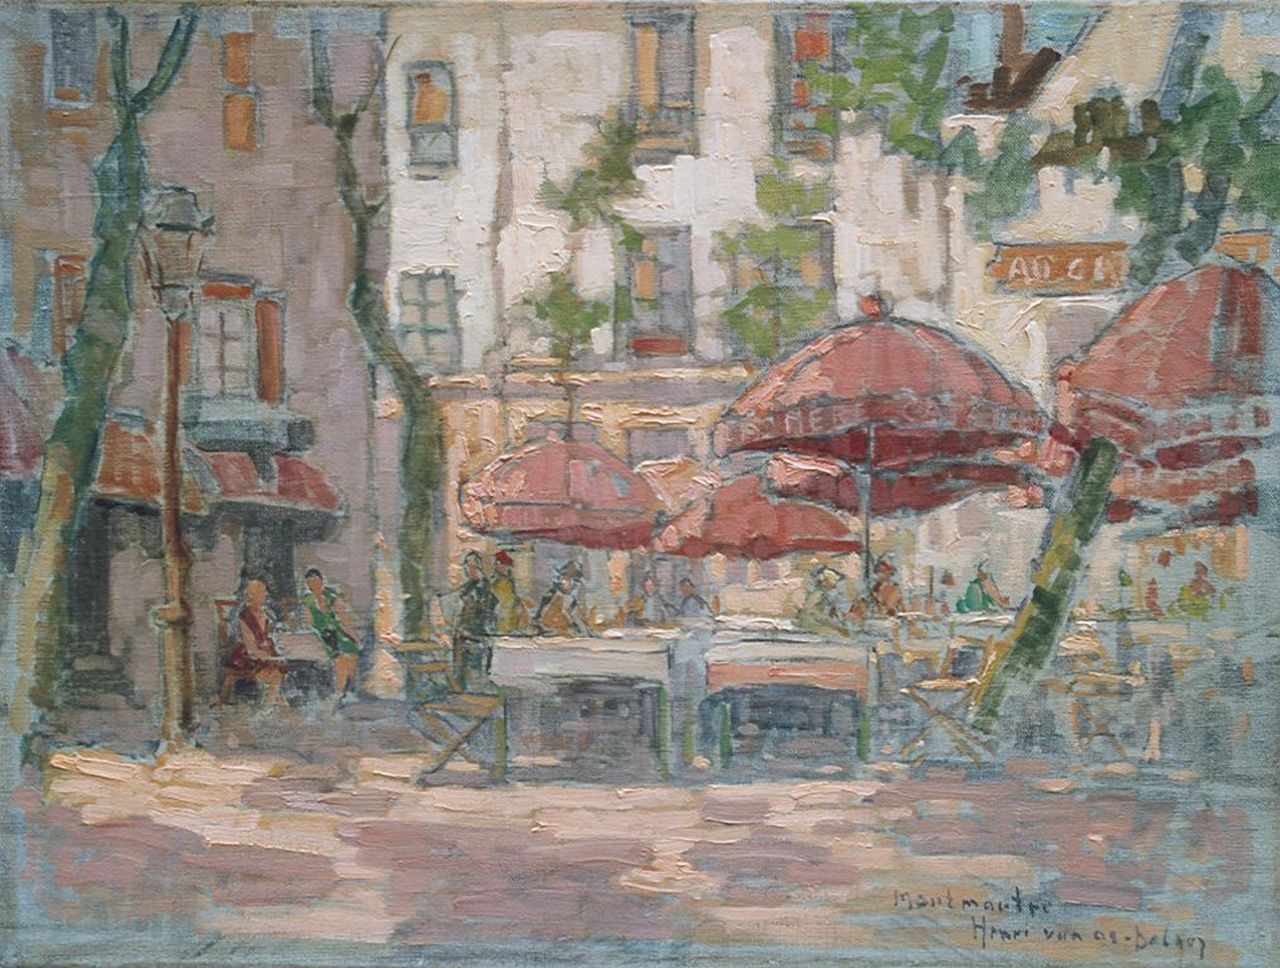 Os-Delhez (Hendrik van Os) H. van | Hendrik 'Henri' van Os-Delhez (Hendrik van Os), Terrace at Montmartre, oil on canvas 30.2 x 40.3 cm, signed l.r.